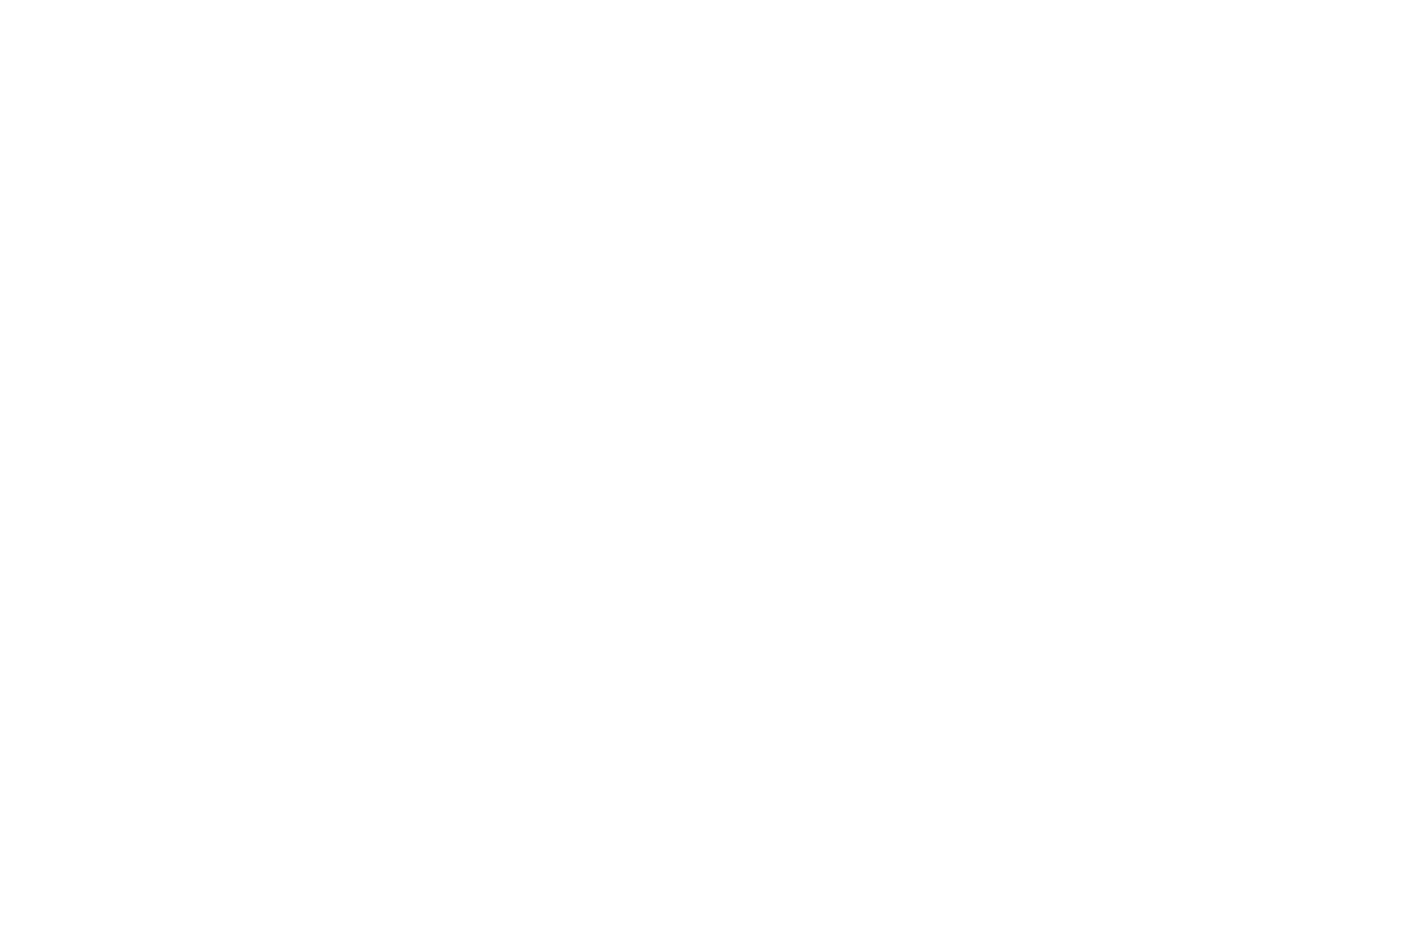 William Morris Society